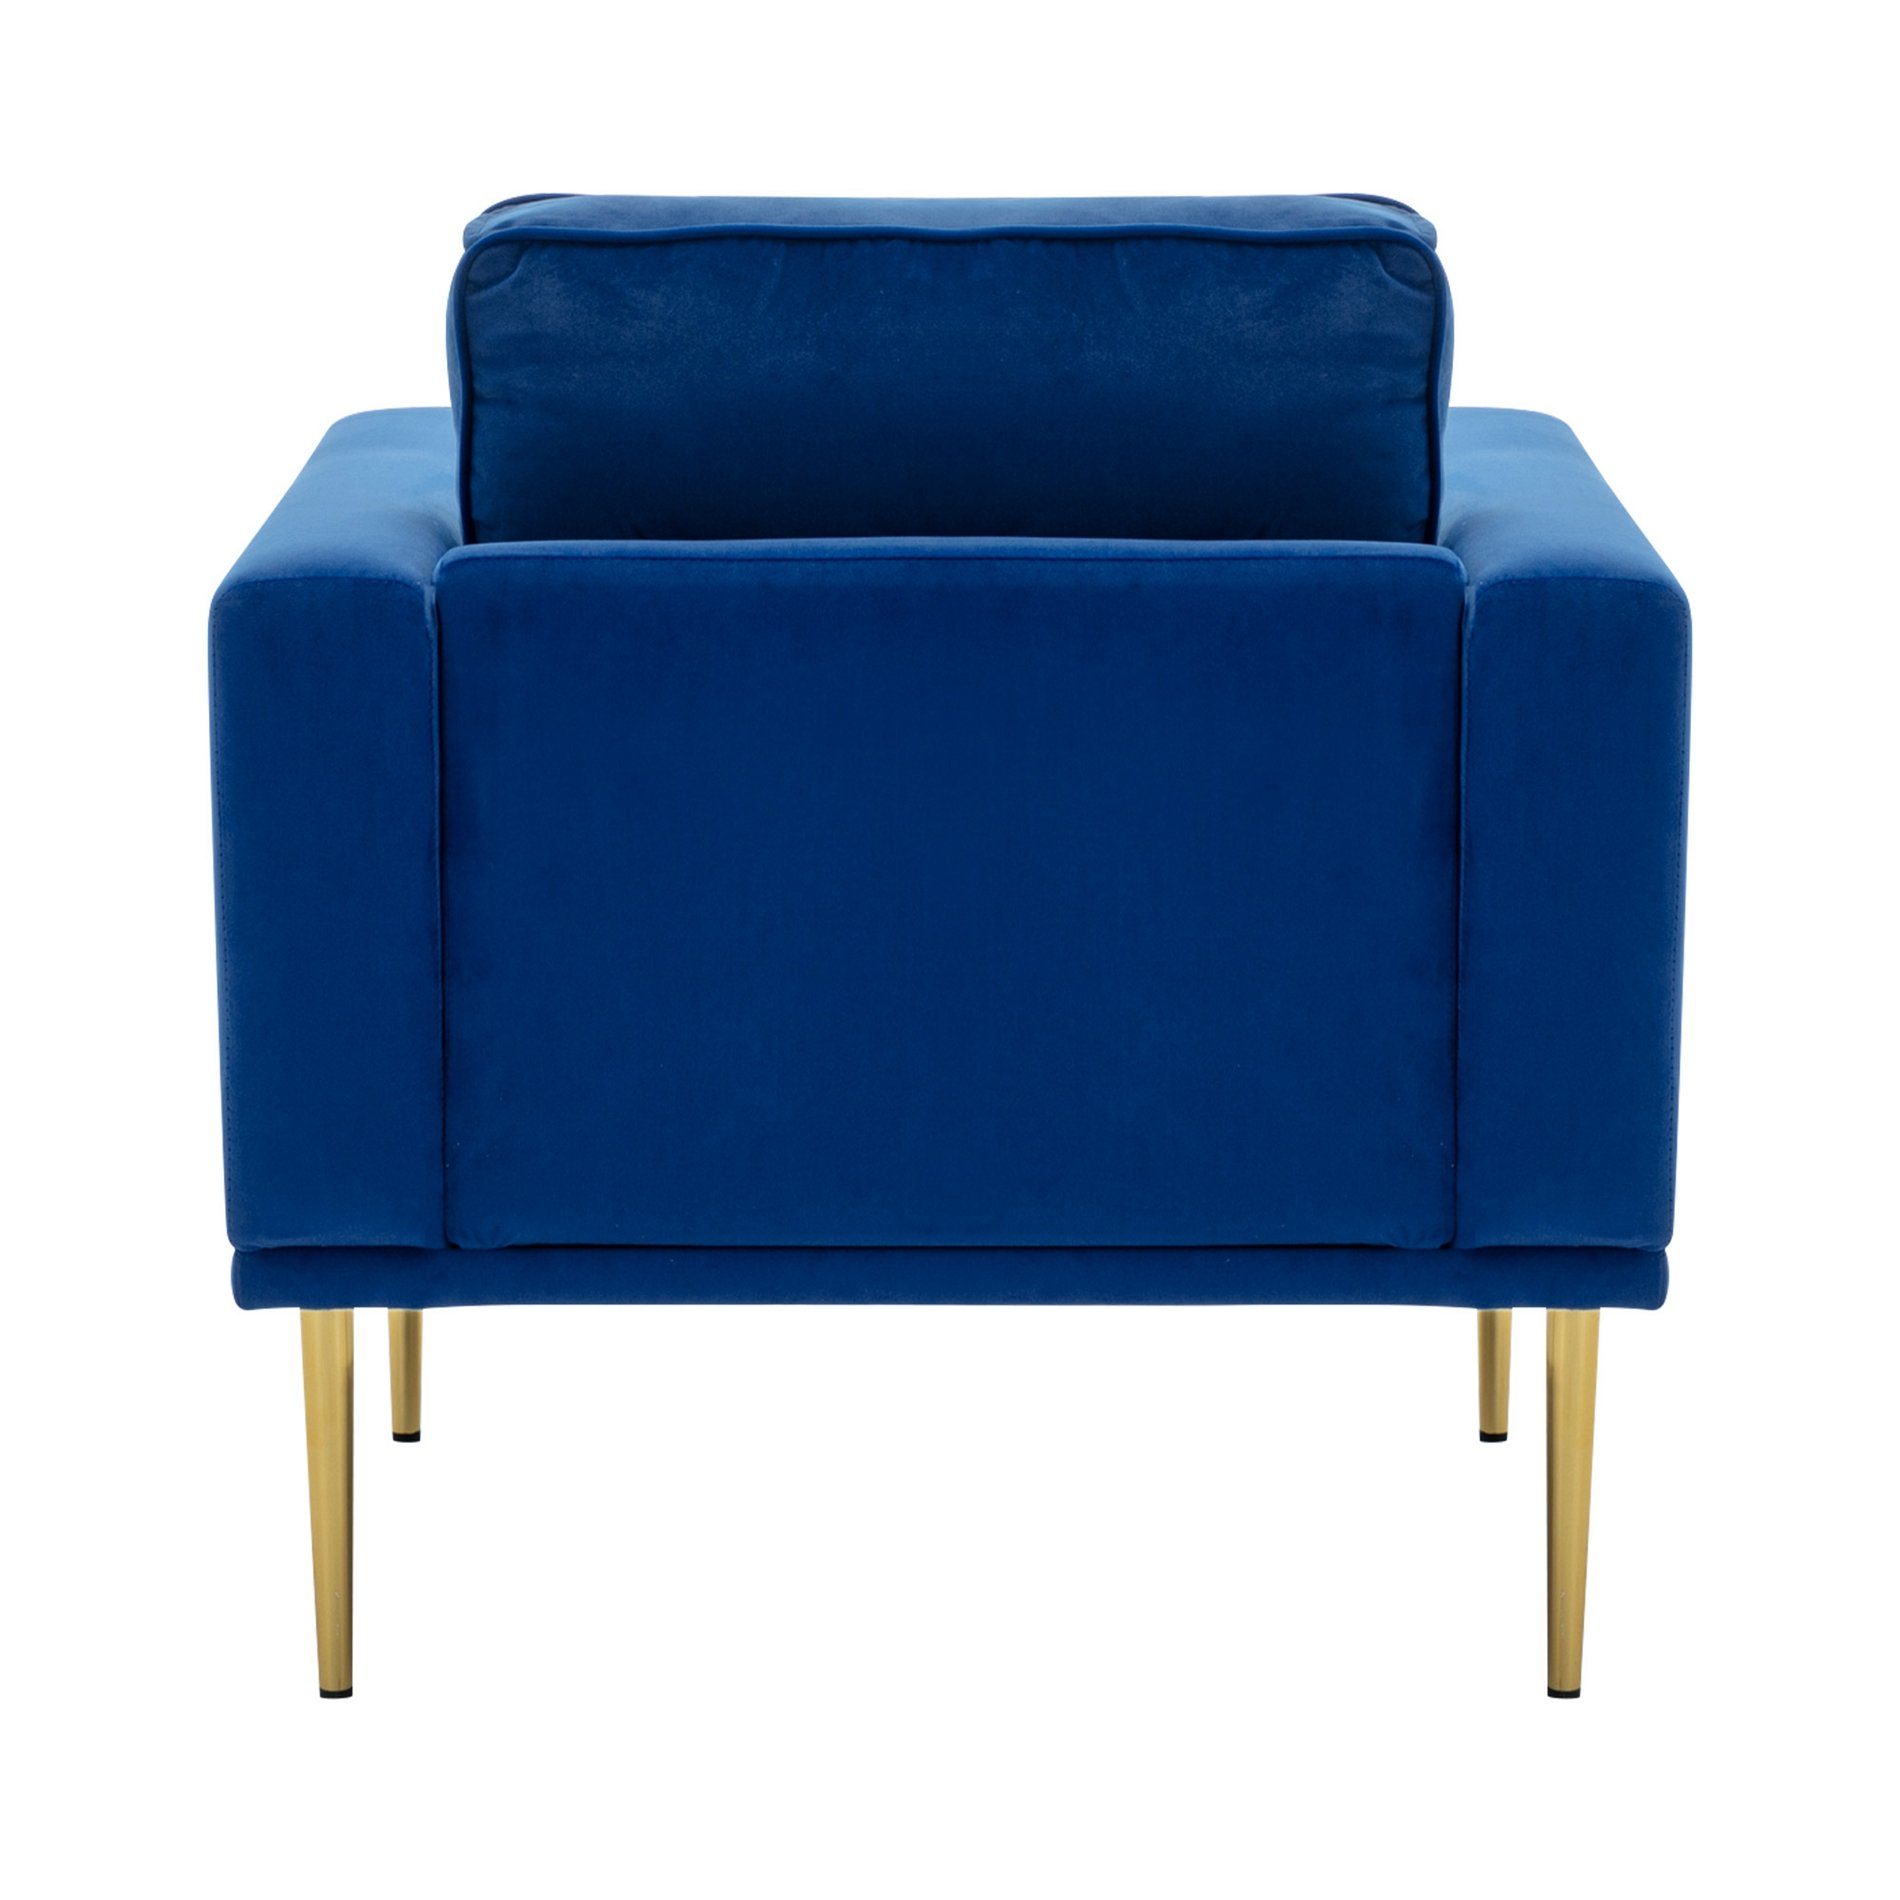 Samtstuhl, Loungesessel Stuhl Celya blau gepolsterter einzelner Sofastuhl, Sessel, Moderner